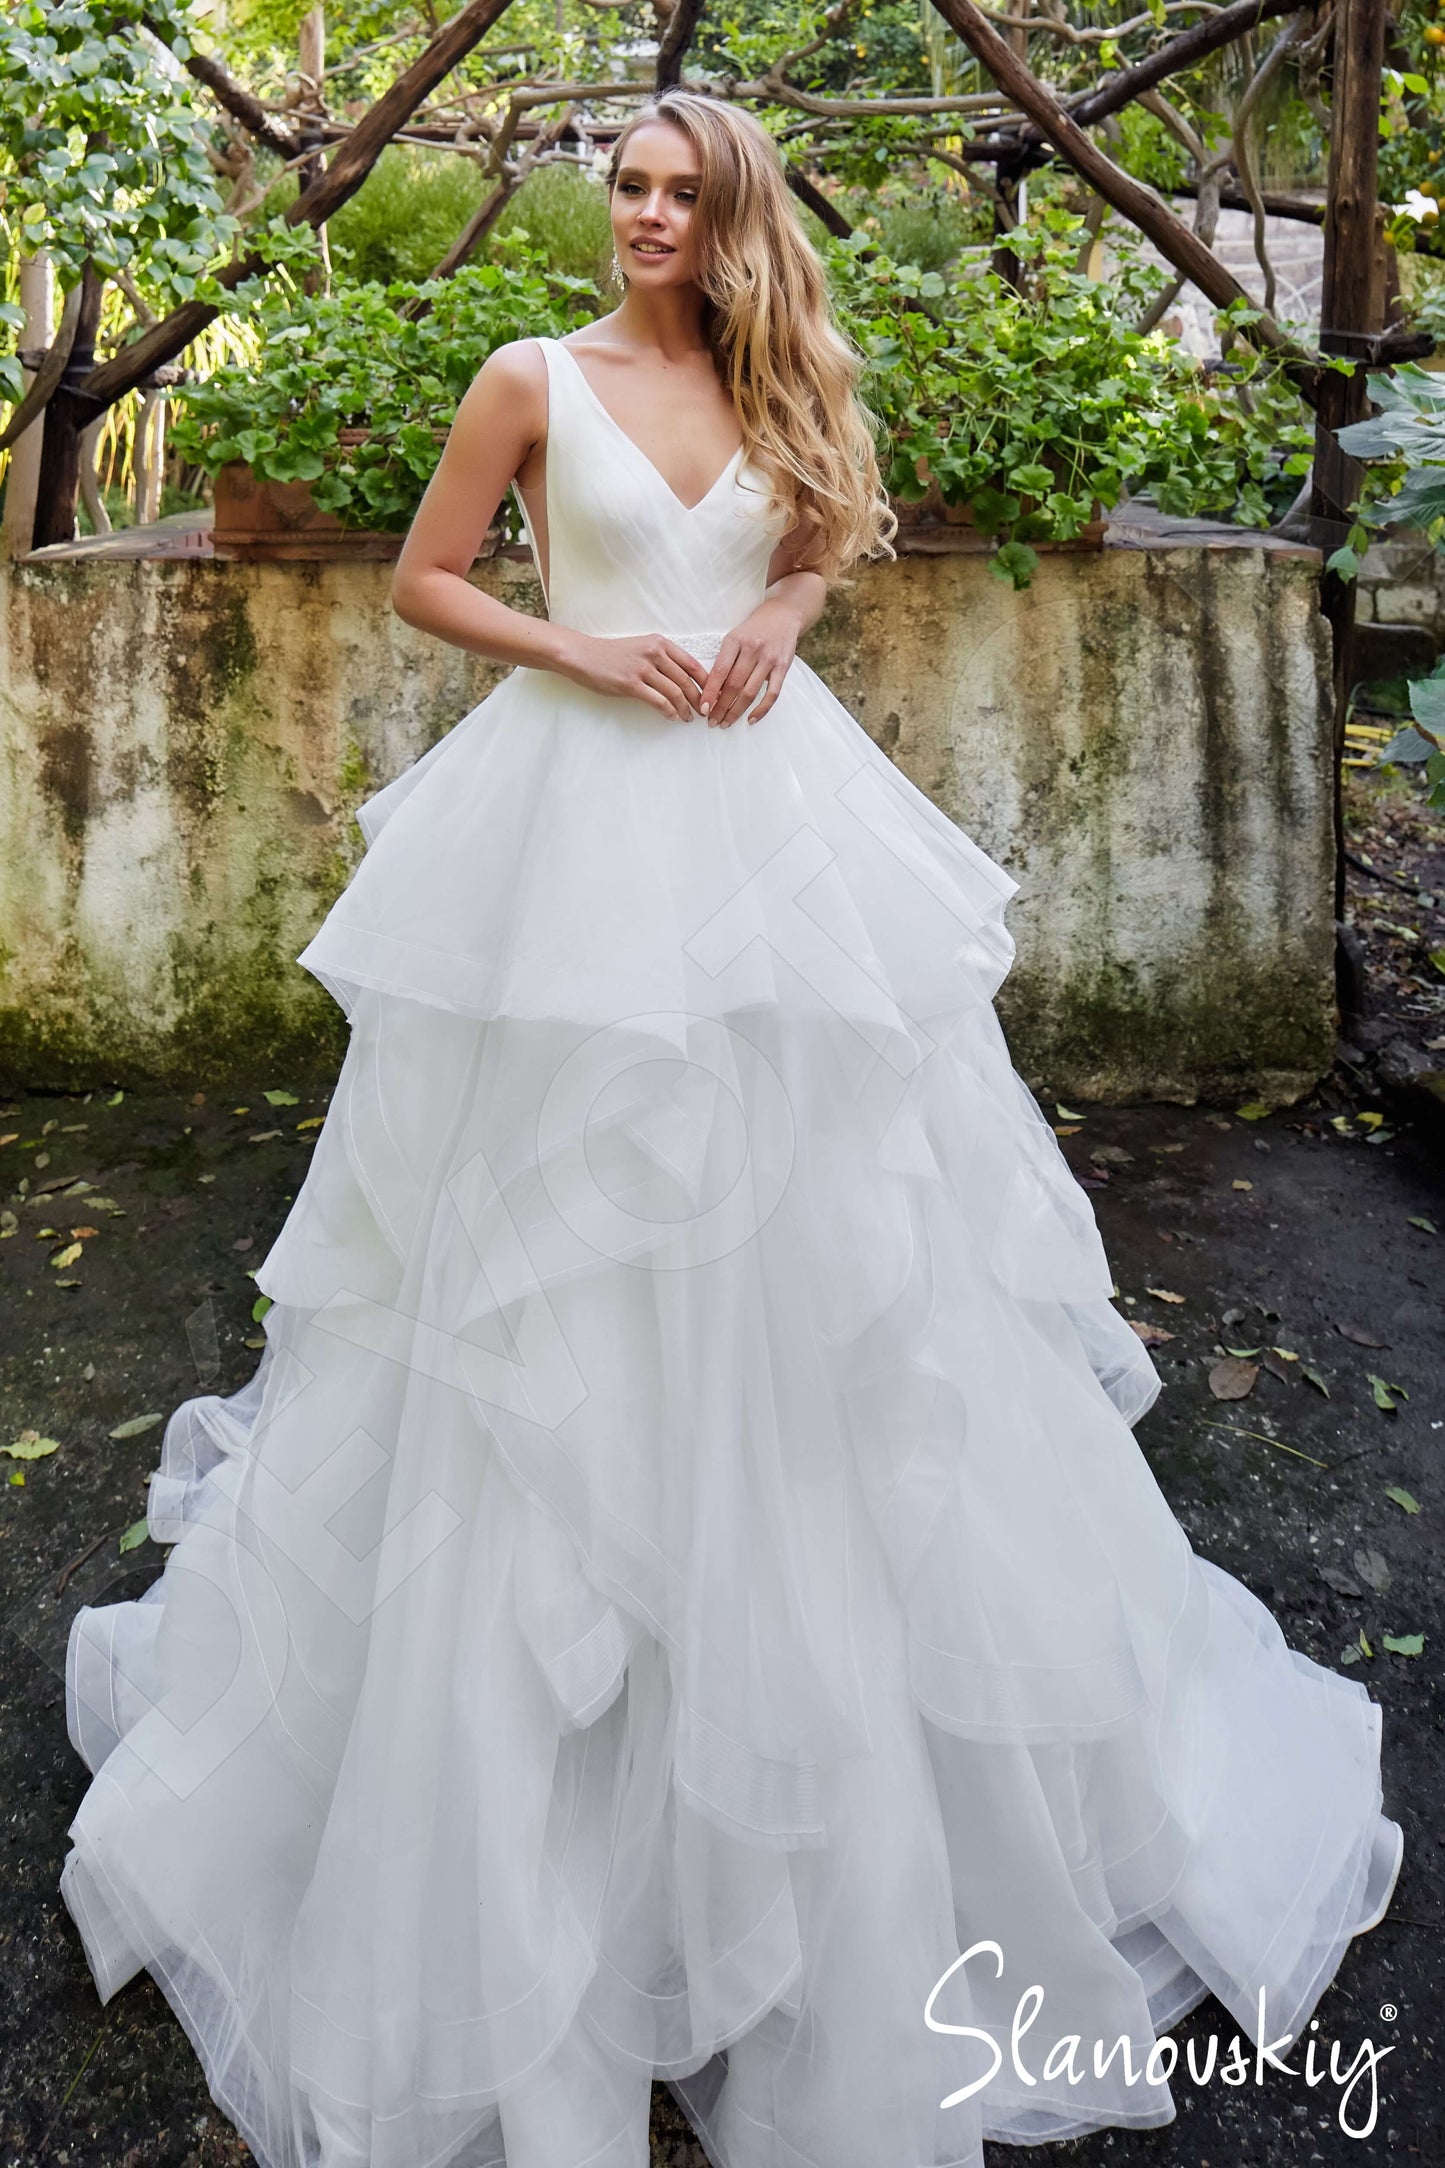 Asta Open back Princess/Ball Gown Sleeveless Wedding Dress Front